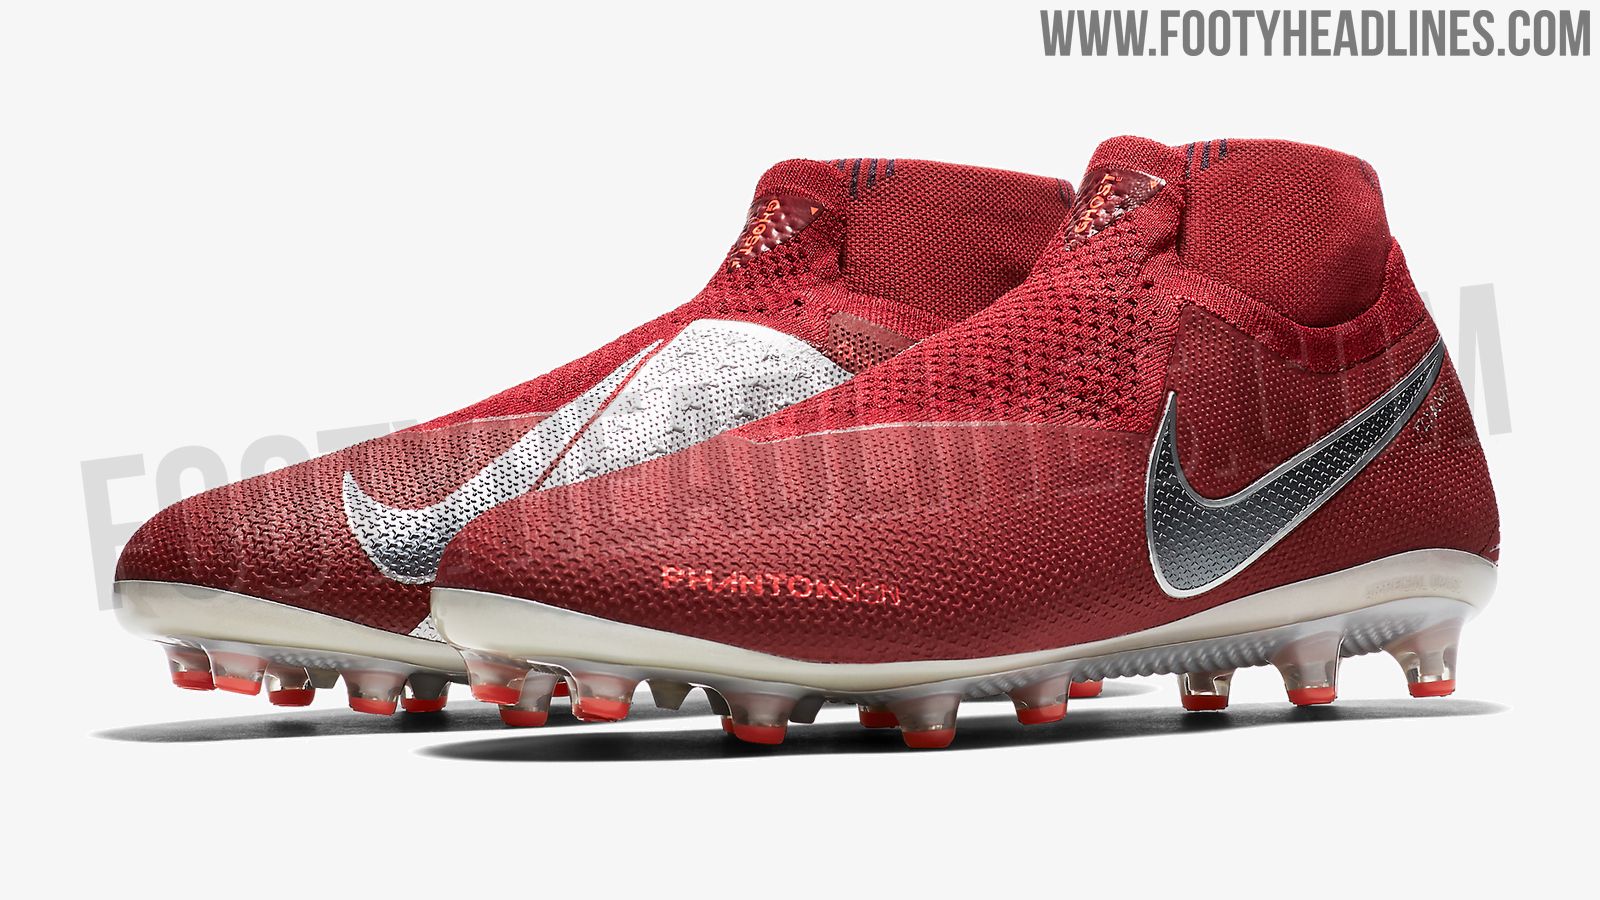 Team Red / Nike Phantom Vision 2018 Blood' Revealed - Footy Headlines